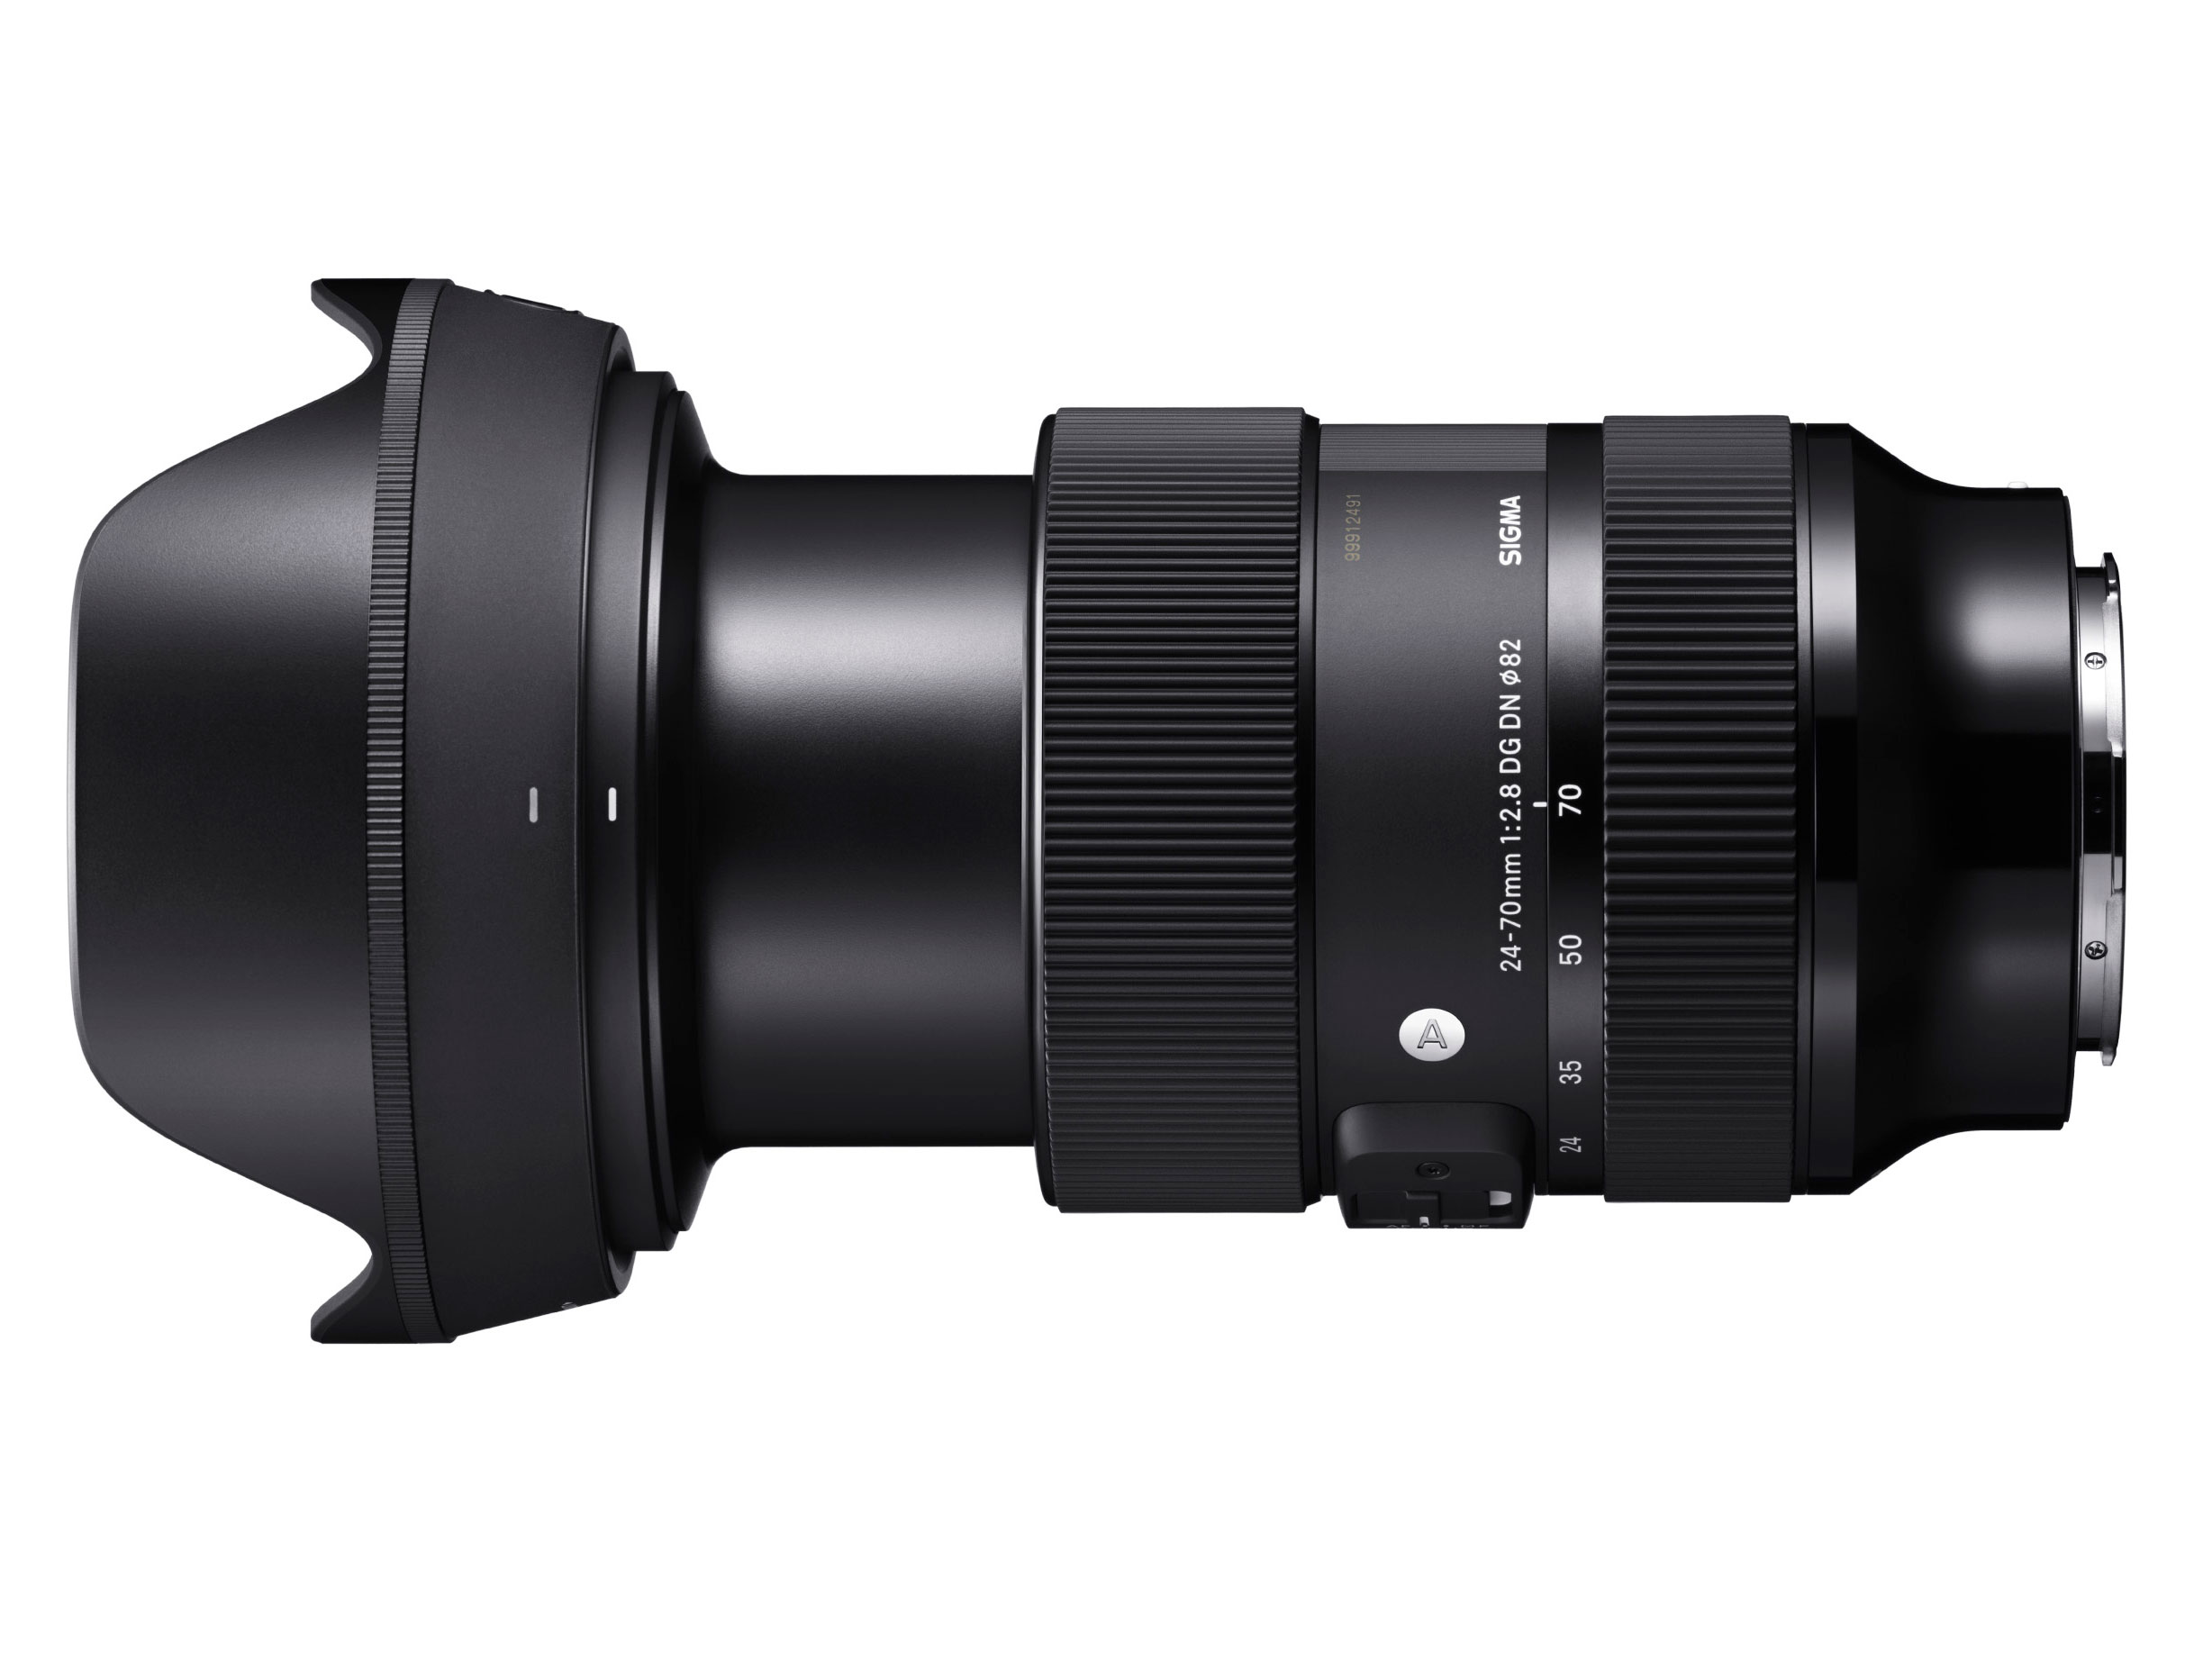 SIGMA giới thiệu ống kính 24-70mm F2.8 DG DN Art mới dành cho Sony E-mount và máy ảnh L-mount